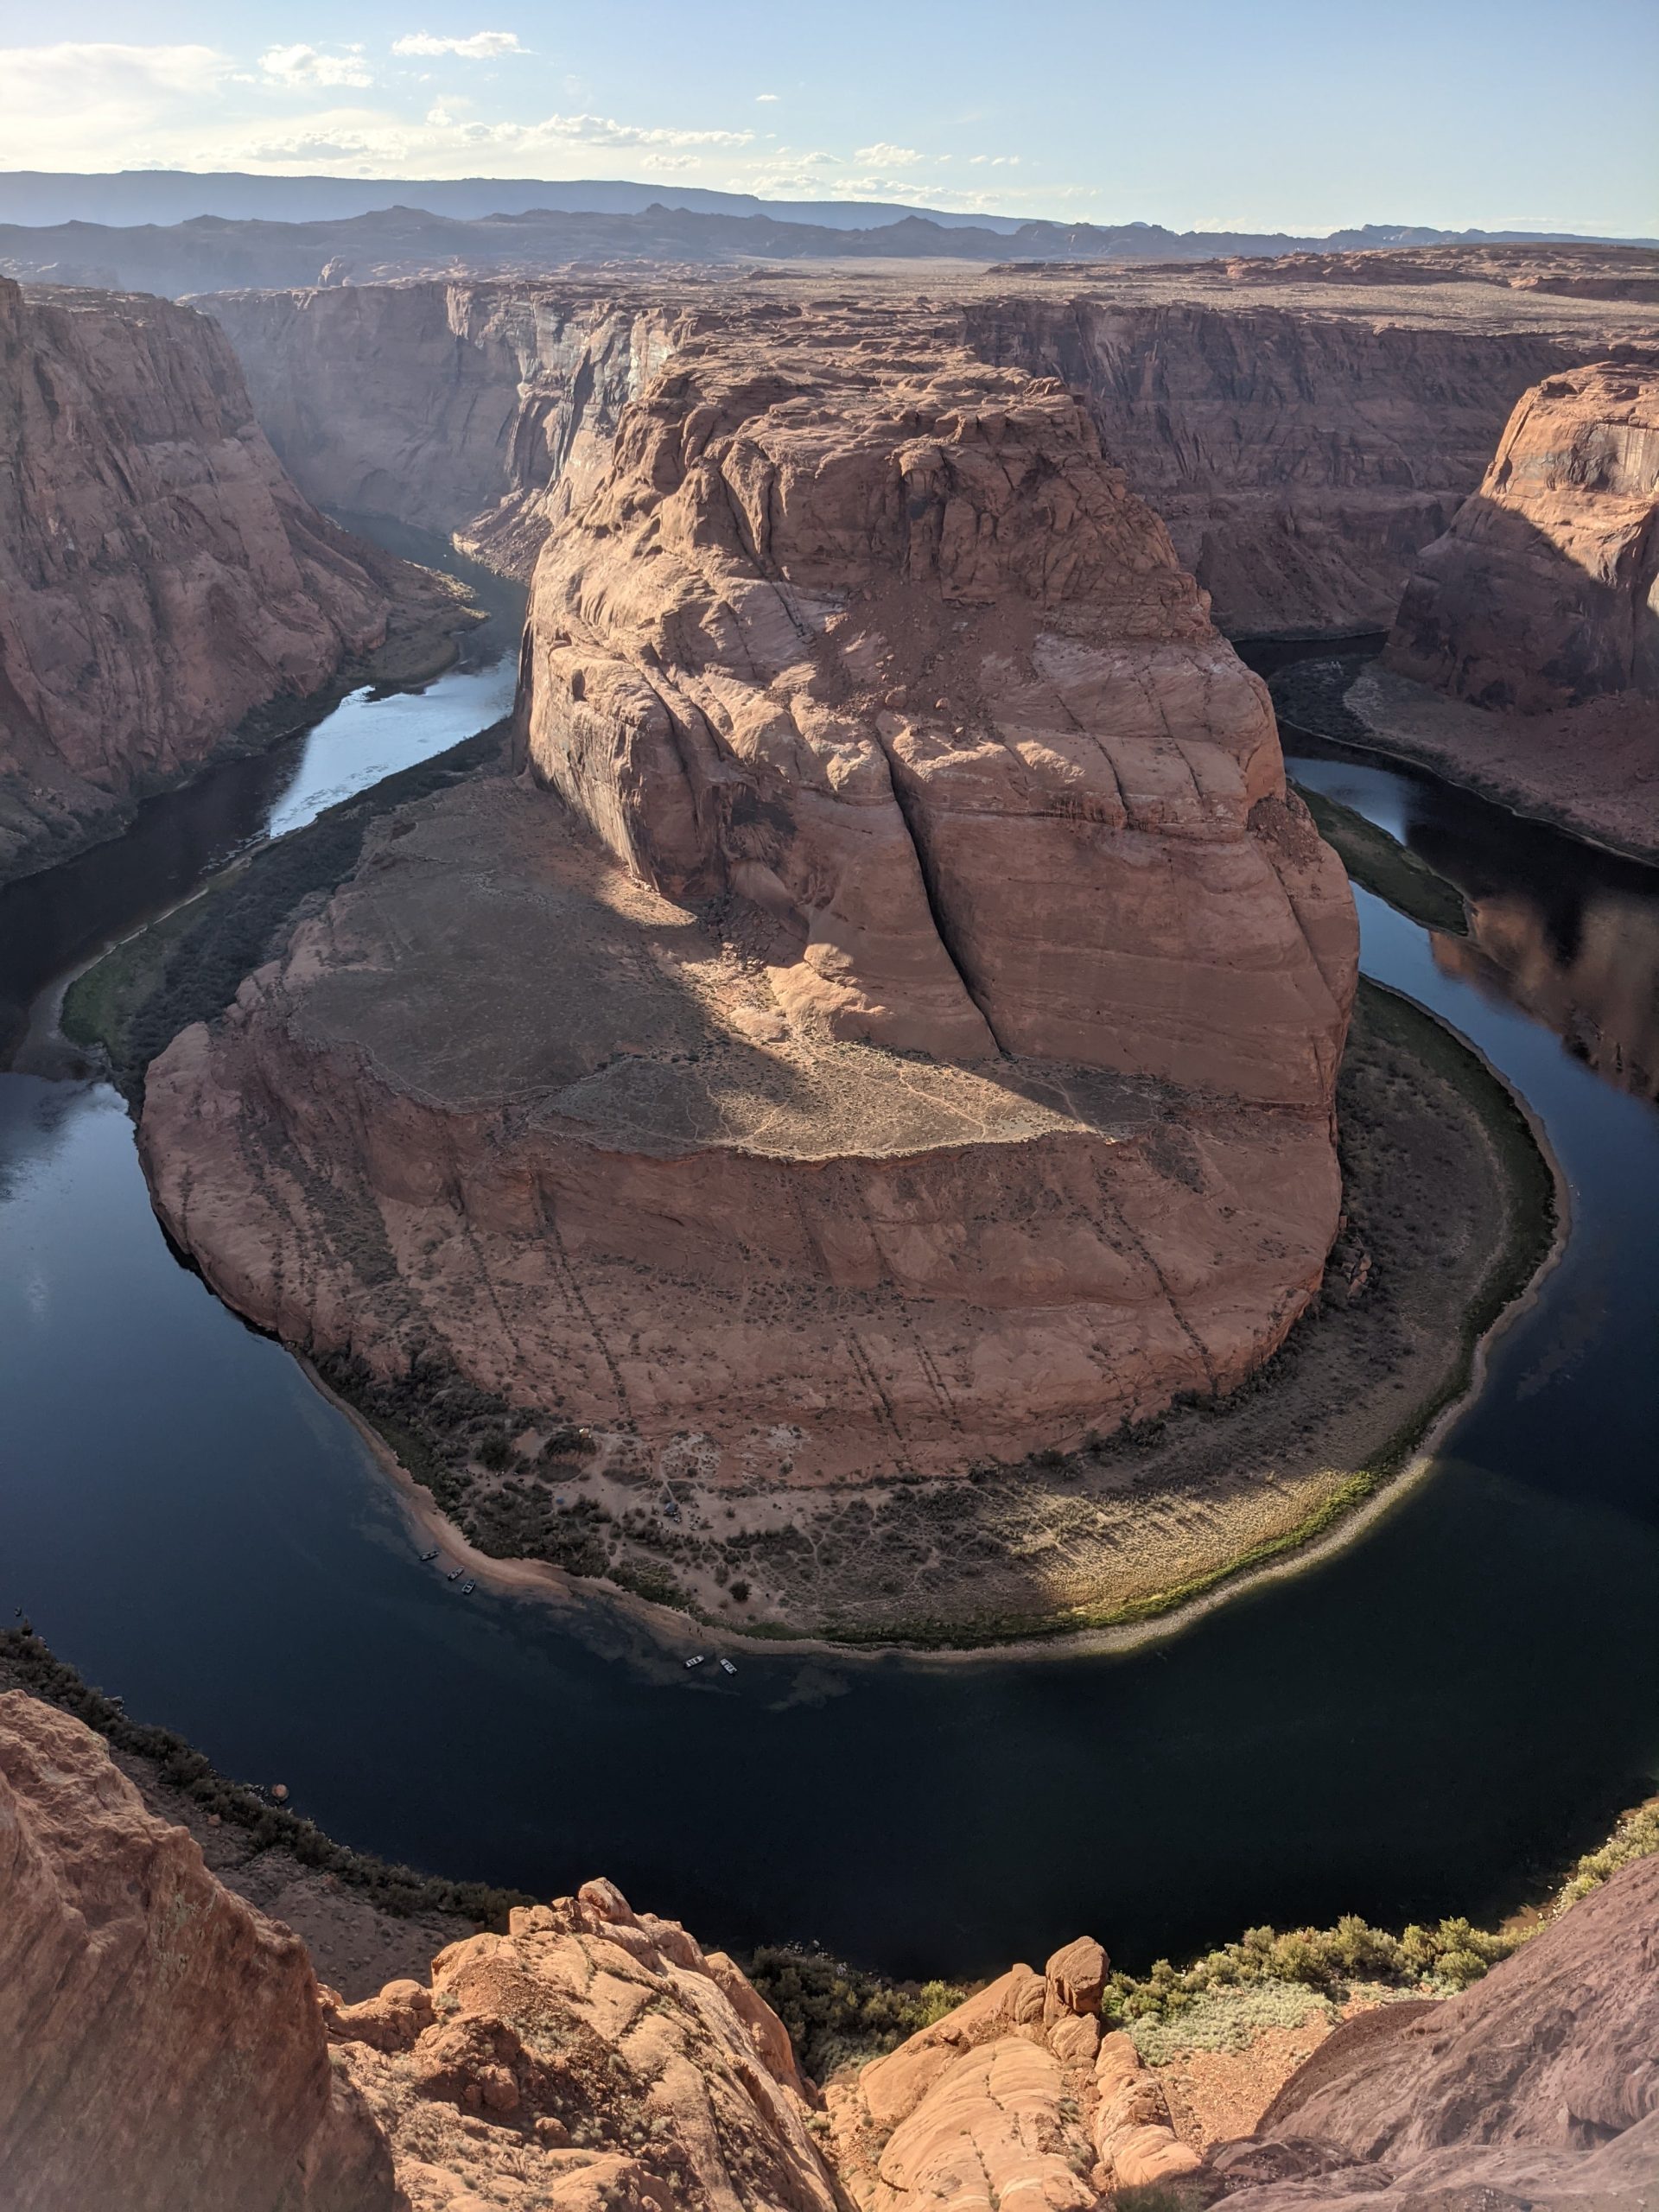 Rieka Colorado tečie okolo skál, čím vyformovala obraz konskej podkovičky.